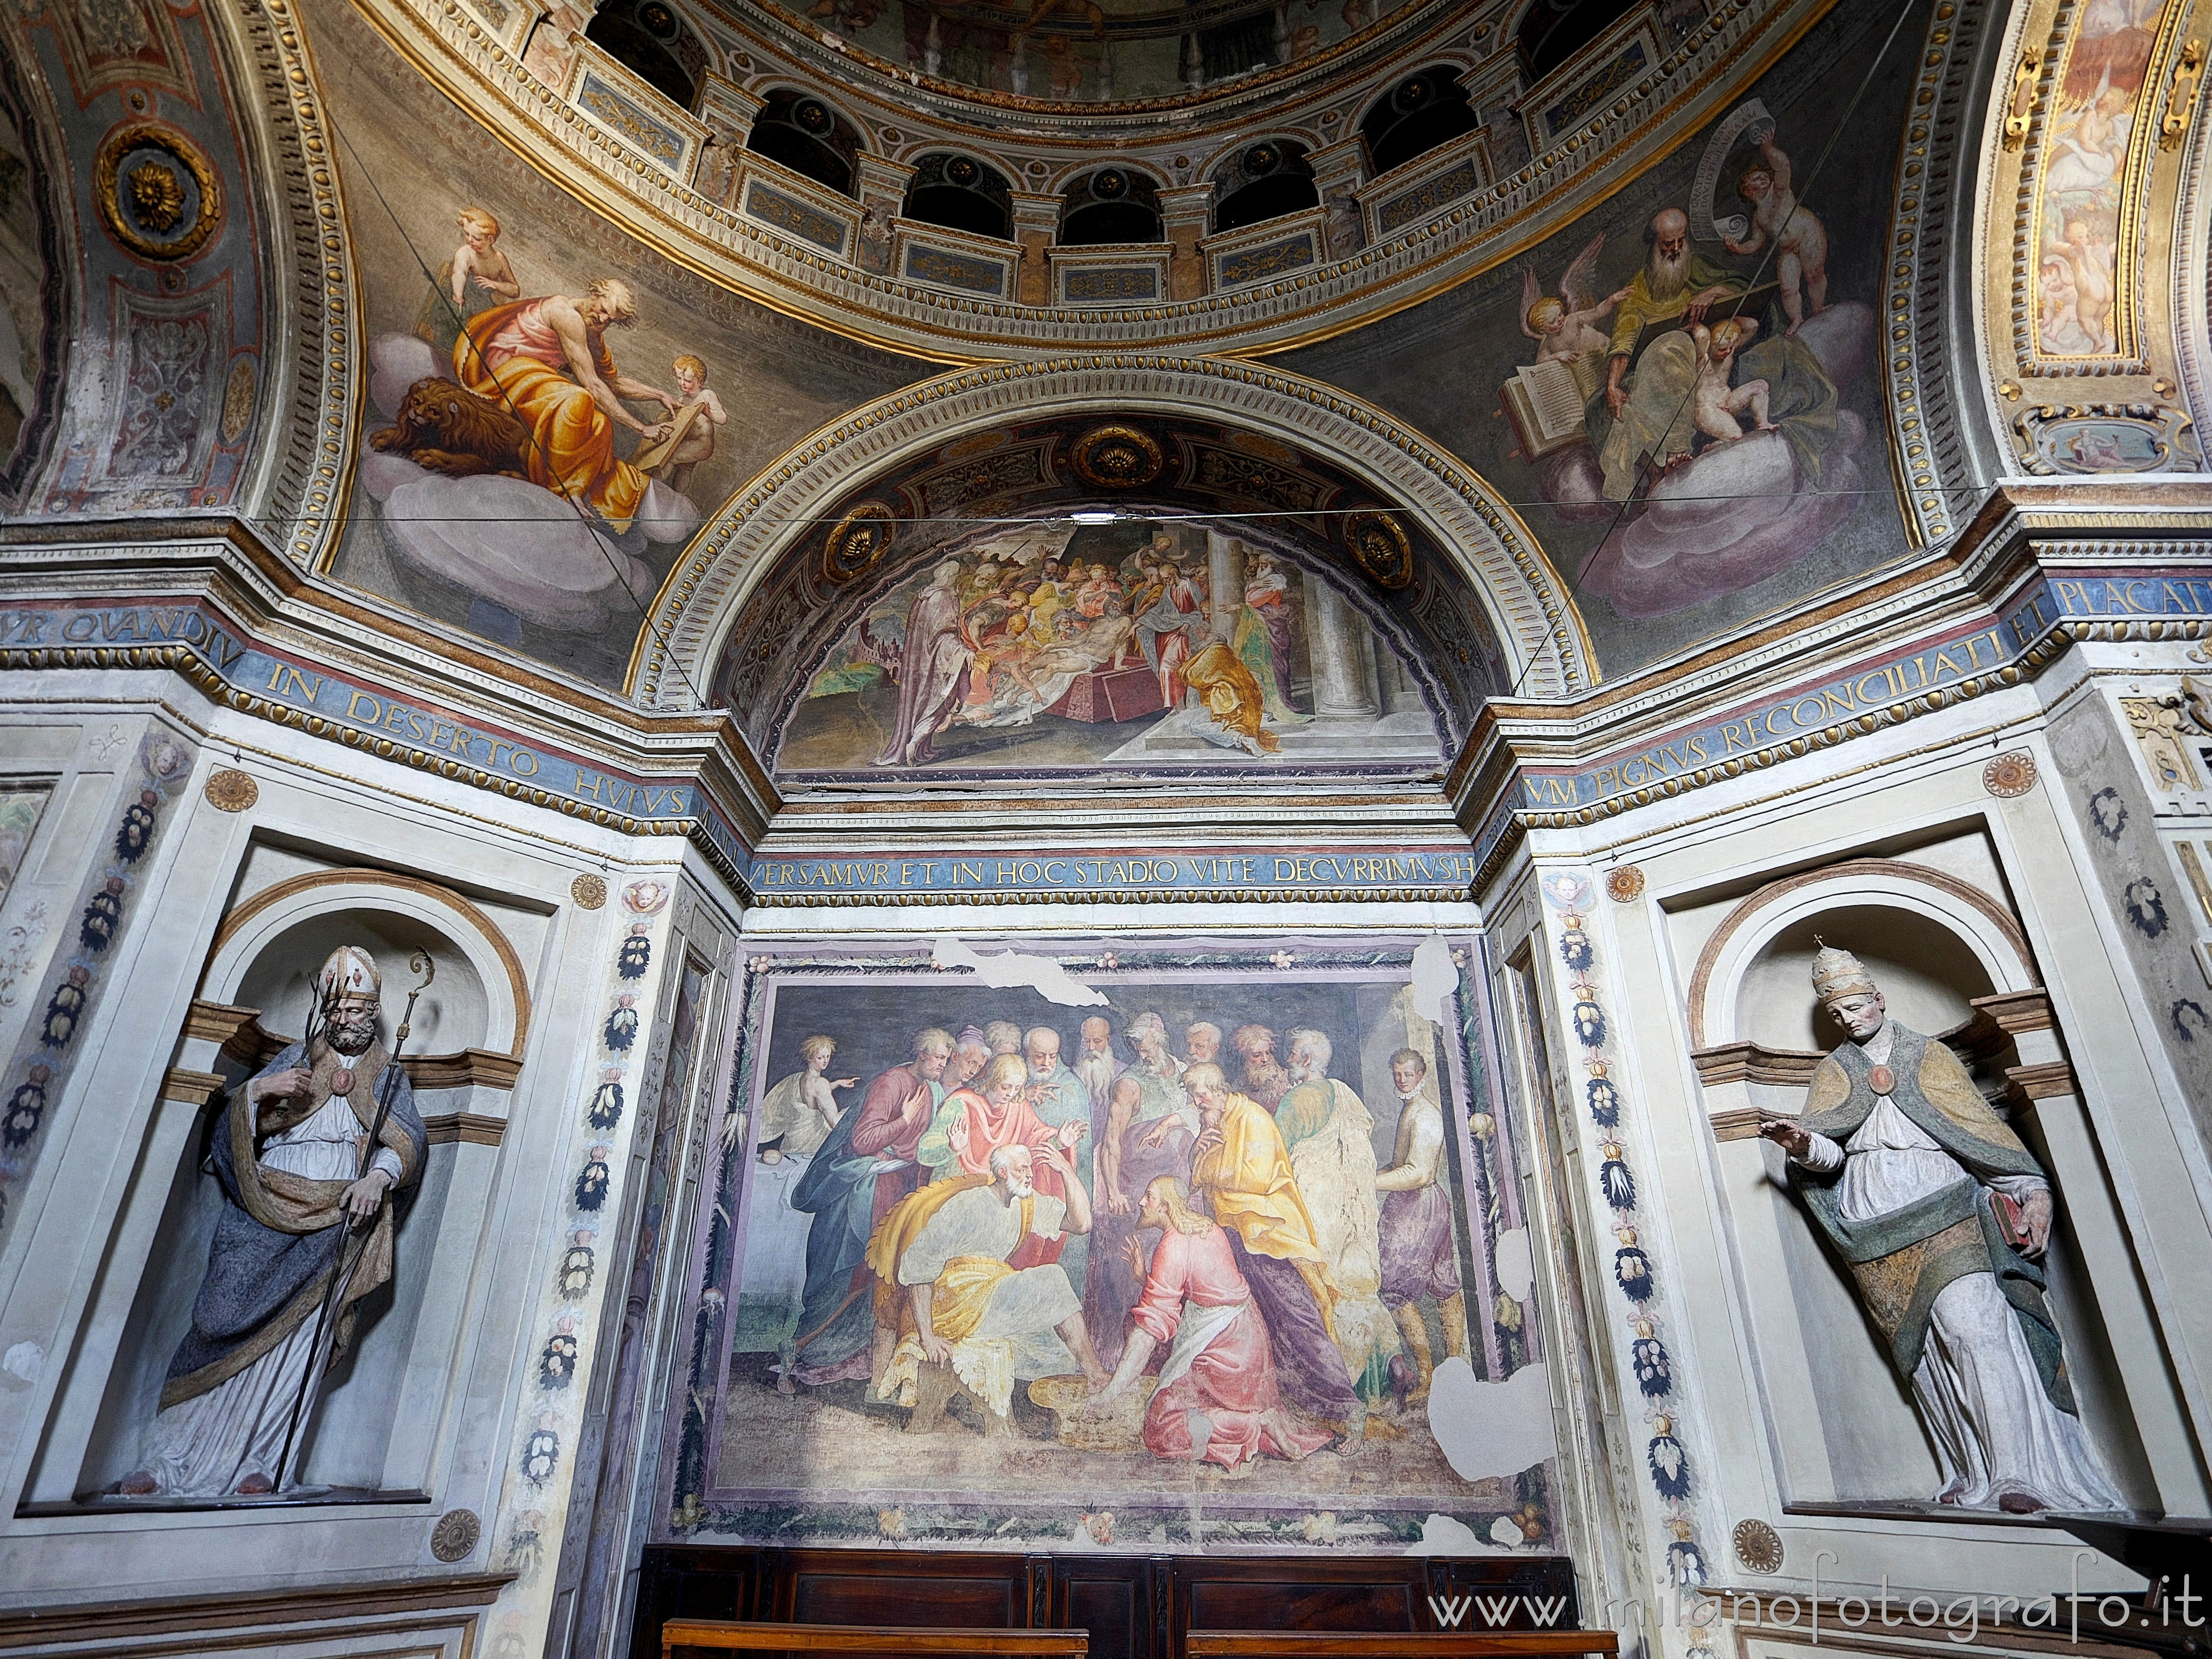 Caravaggio (Bergamo): Parete interna sinistra della Cappella del Santissimo Sacramento nella Chiesa dei Santi Fermo e Rustico - Caravaggio (Bergamo)